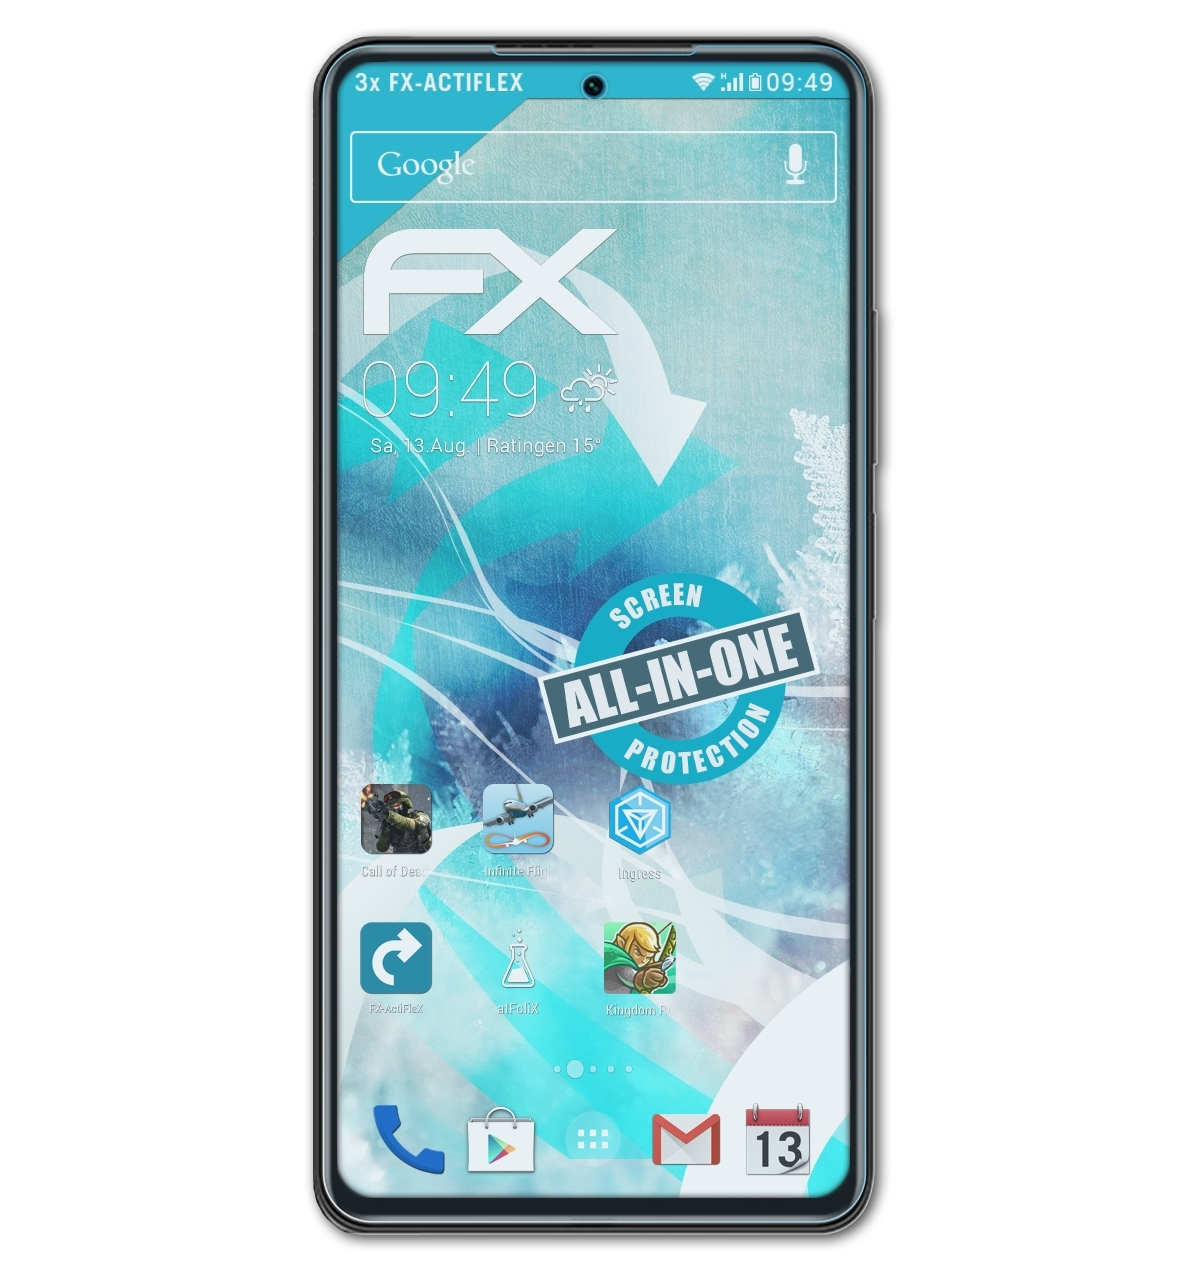 Xiaomi FX-ActiFleX Displayschutz(für 3x K40) ATFOLIX Redmi